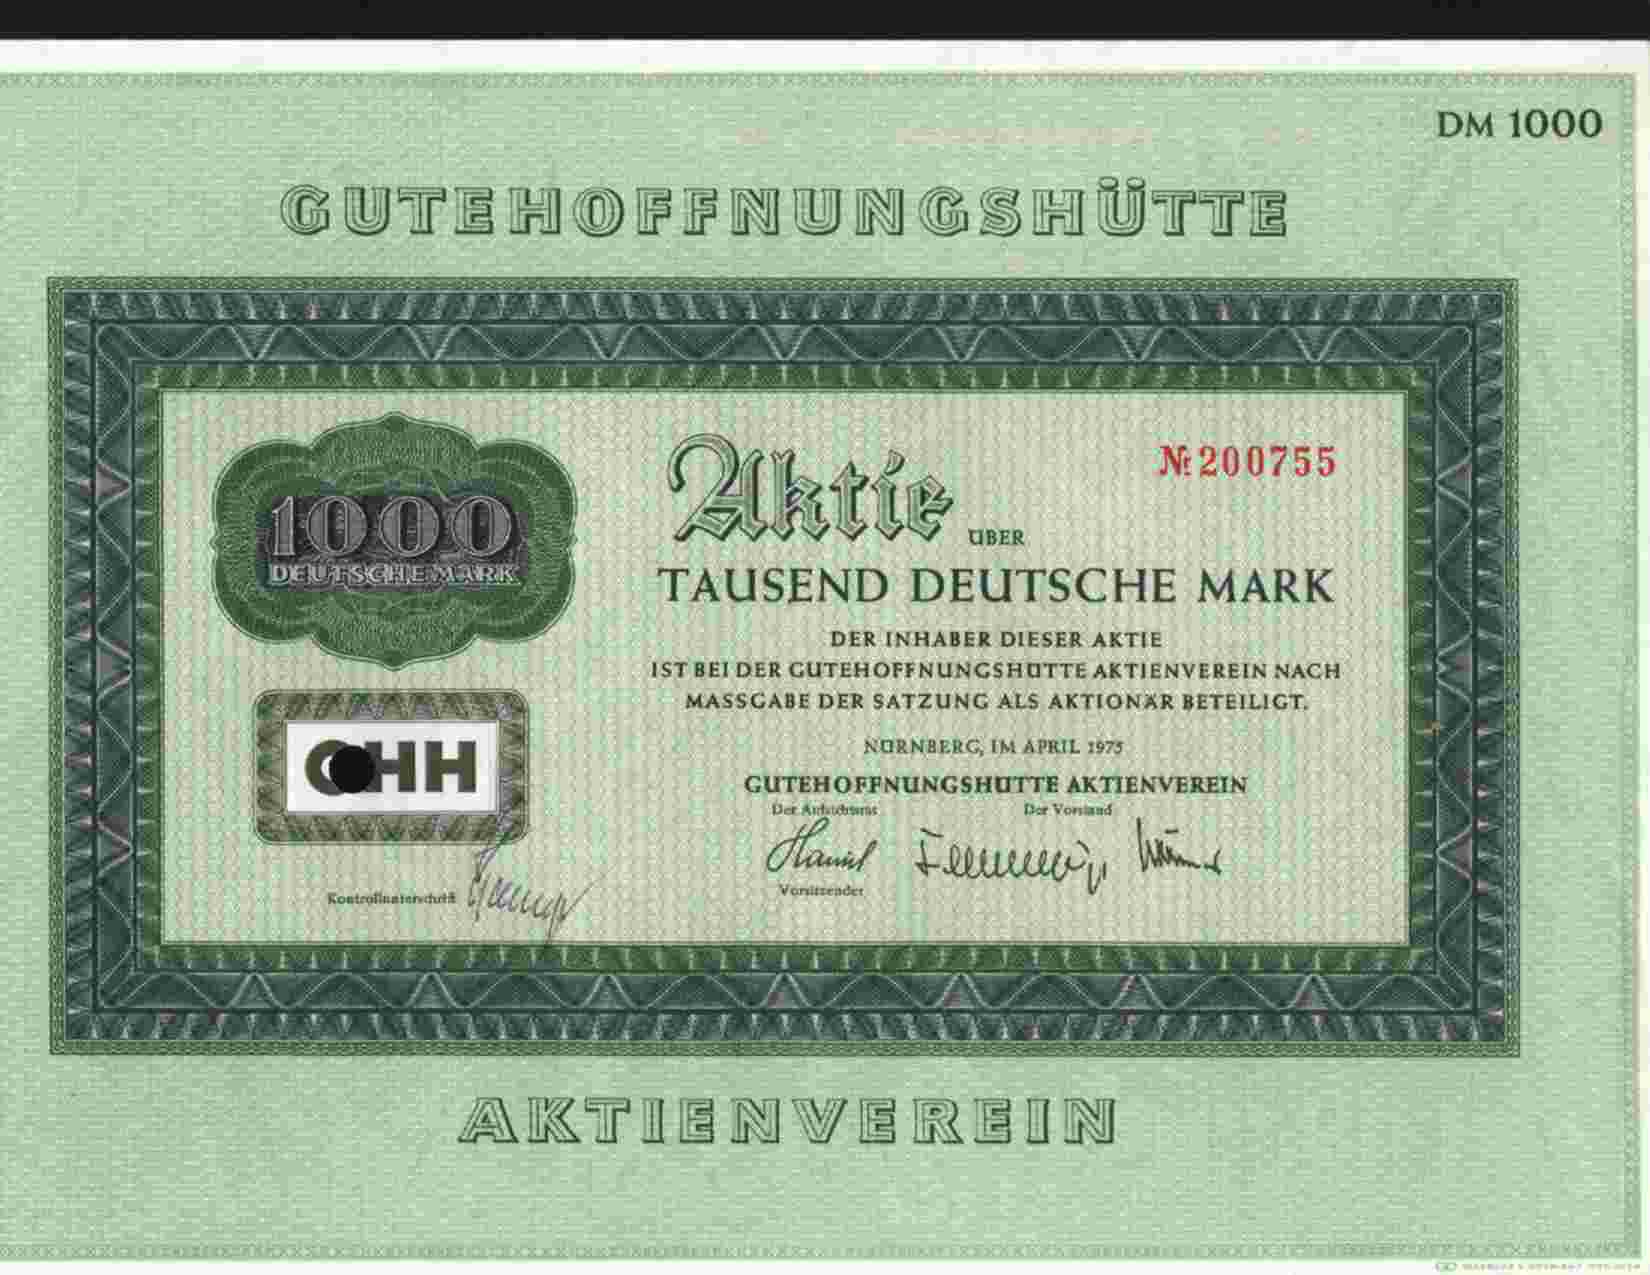 GUTEHOFFNUNGSHUTTE AKTIEVEREIN (NURNBERG / OBERHAUSEN) AKTIE 1000DM APR 1975 - Bank & Versicherung